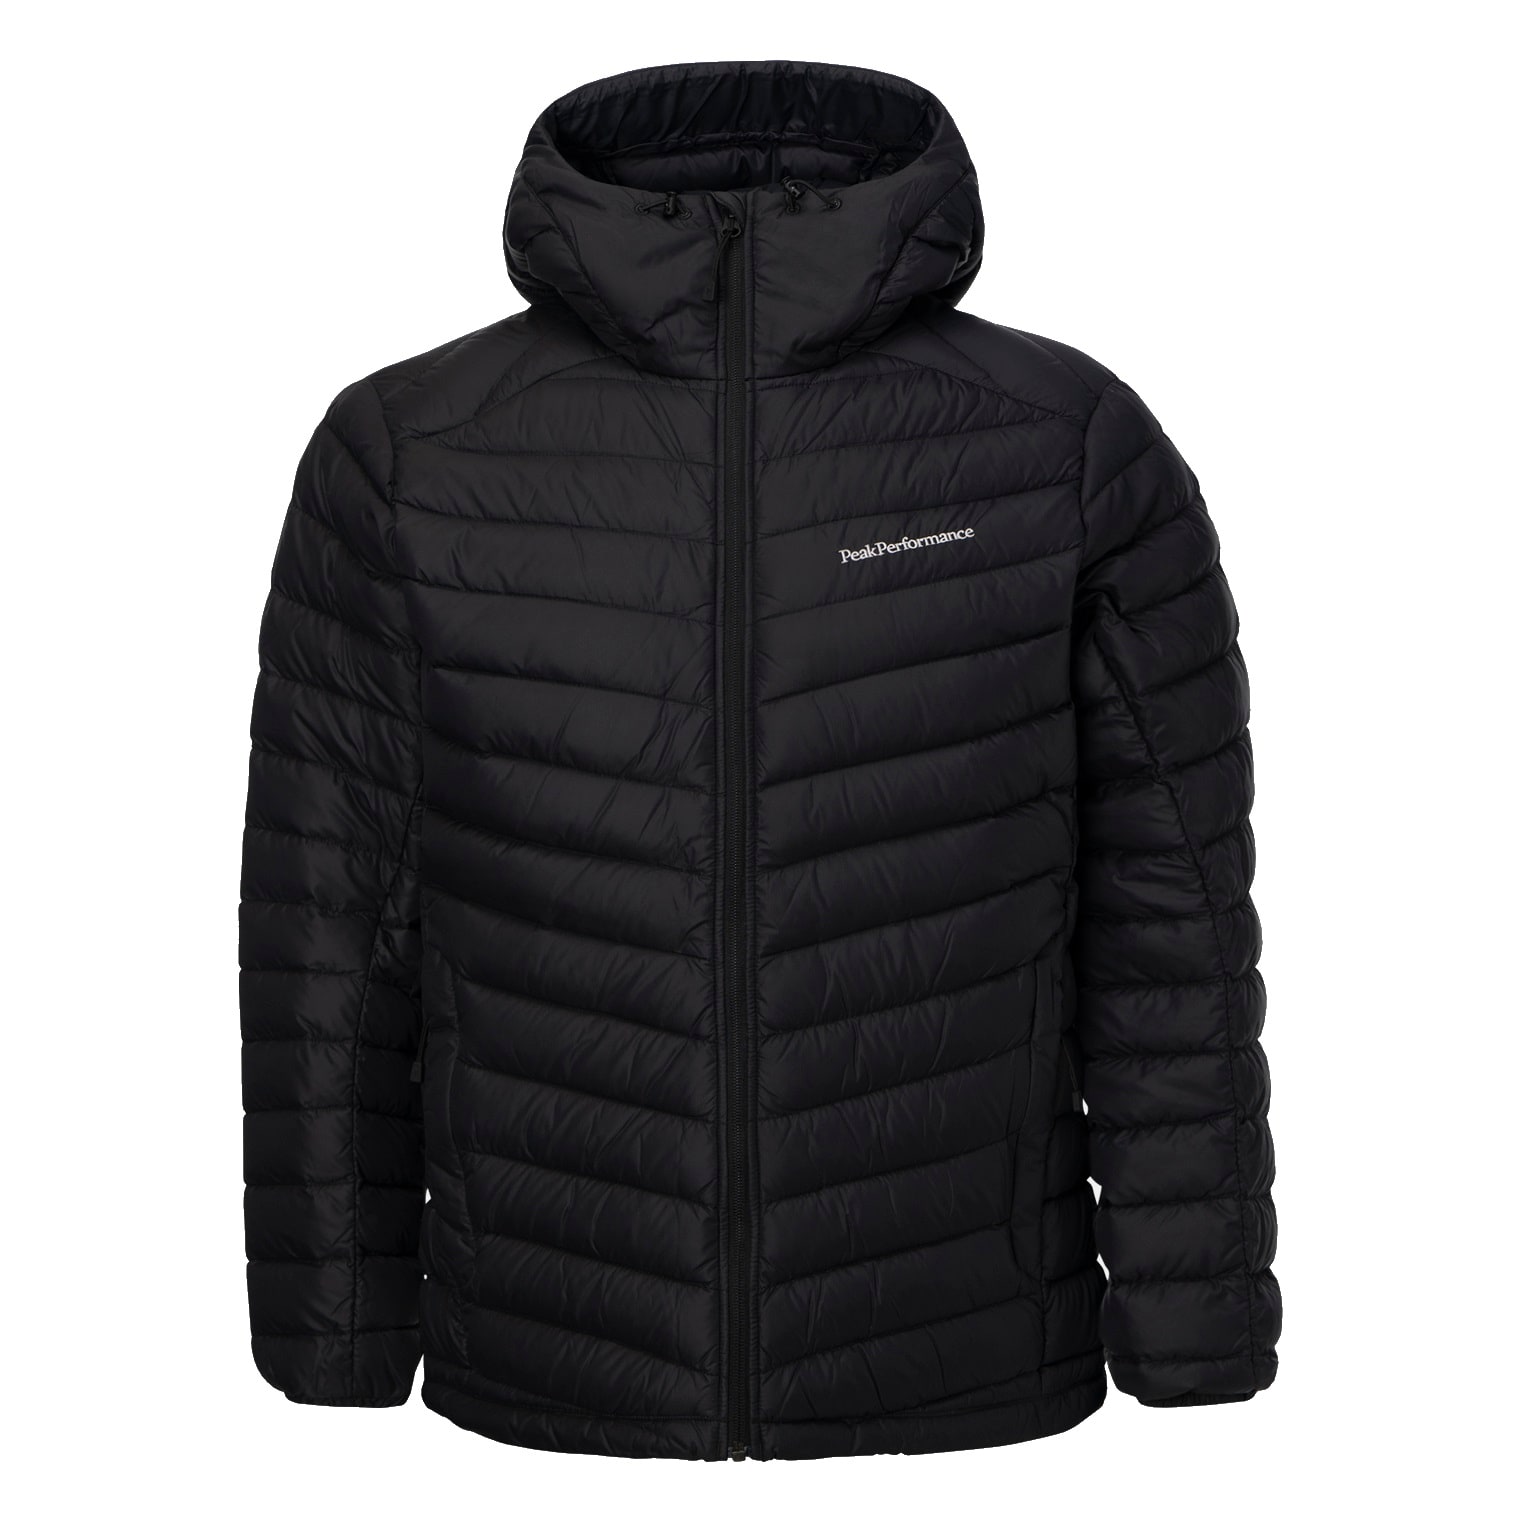 verlangen echo met tijd Buy Peak Performance Men's Frost Down Hooded Jacket from Outnorth